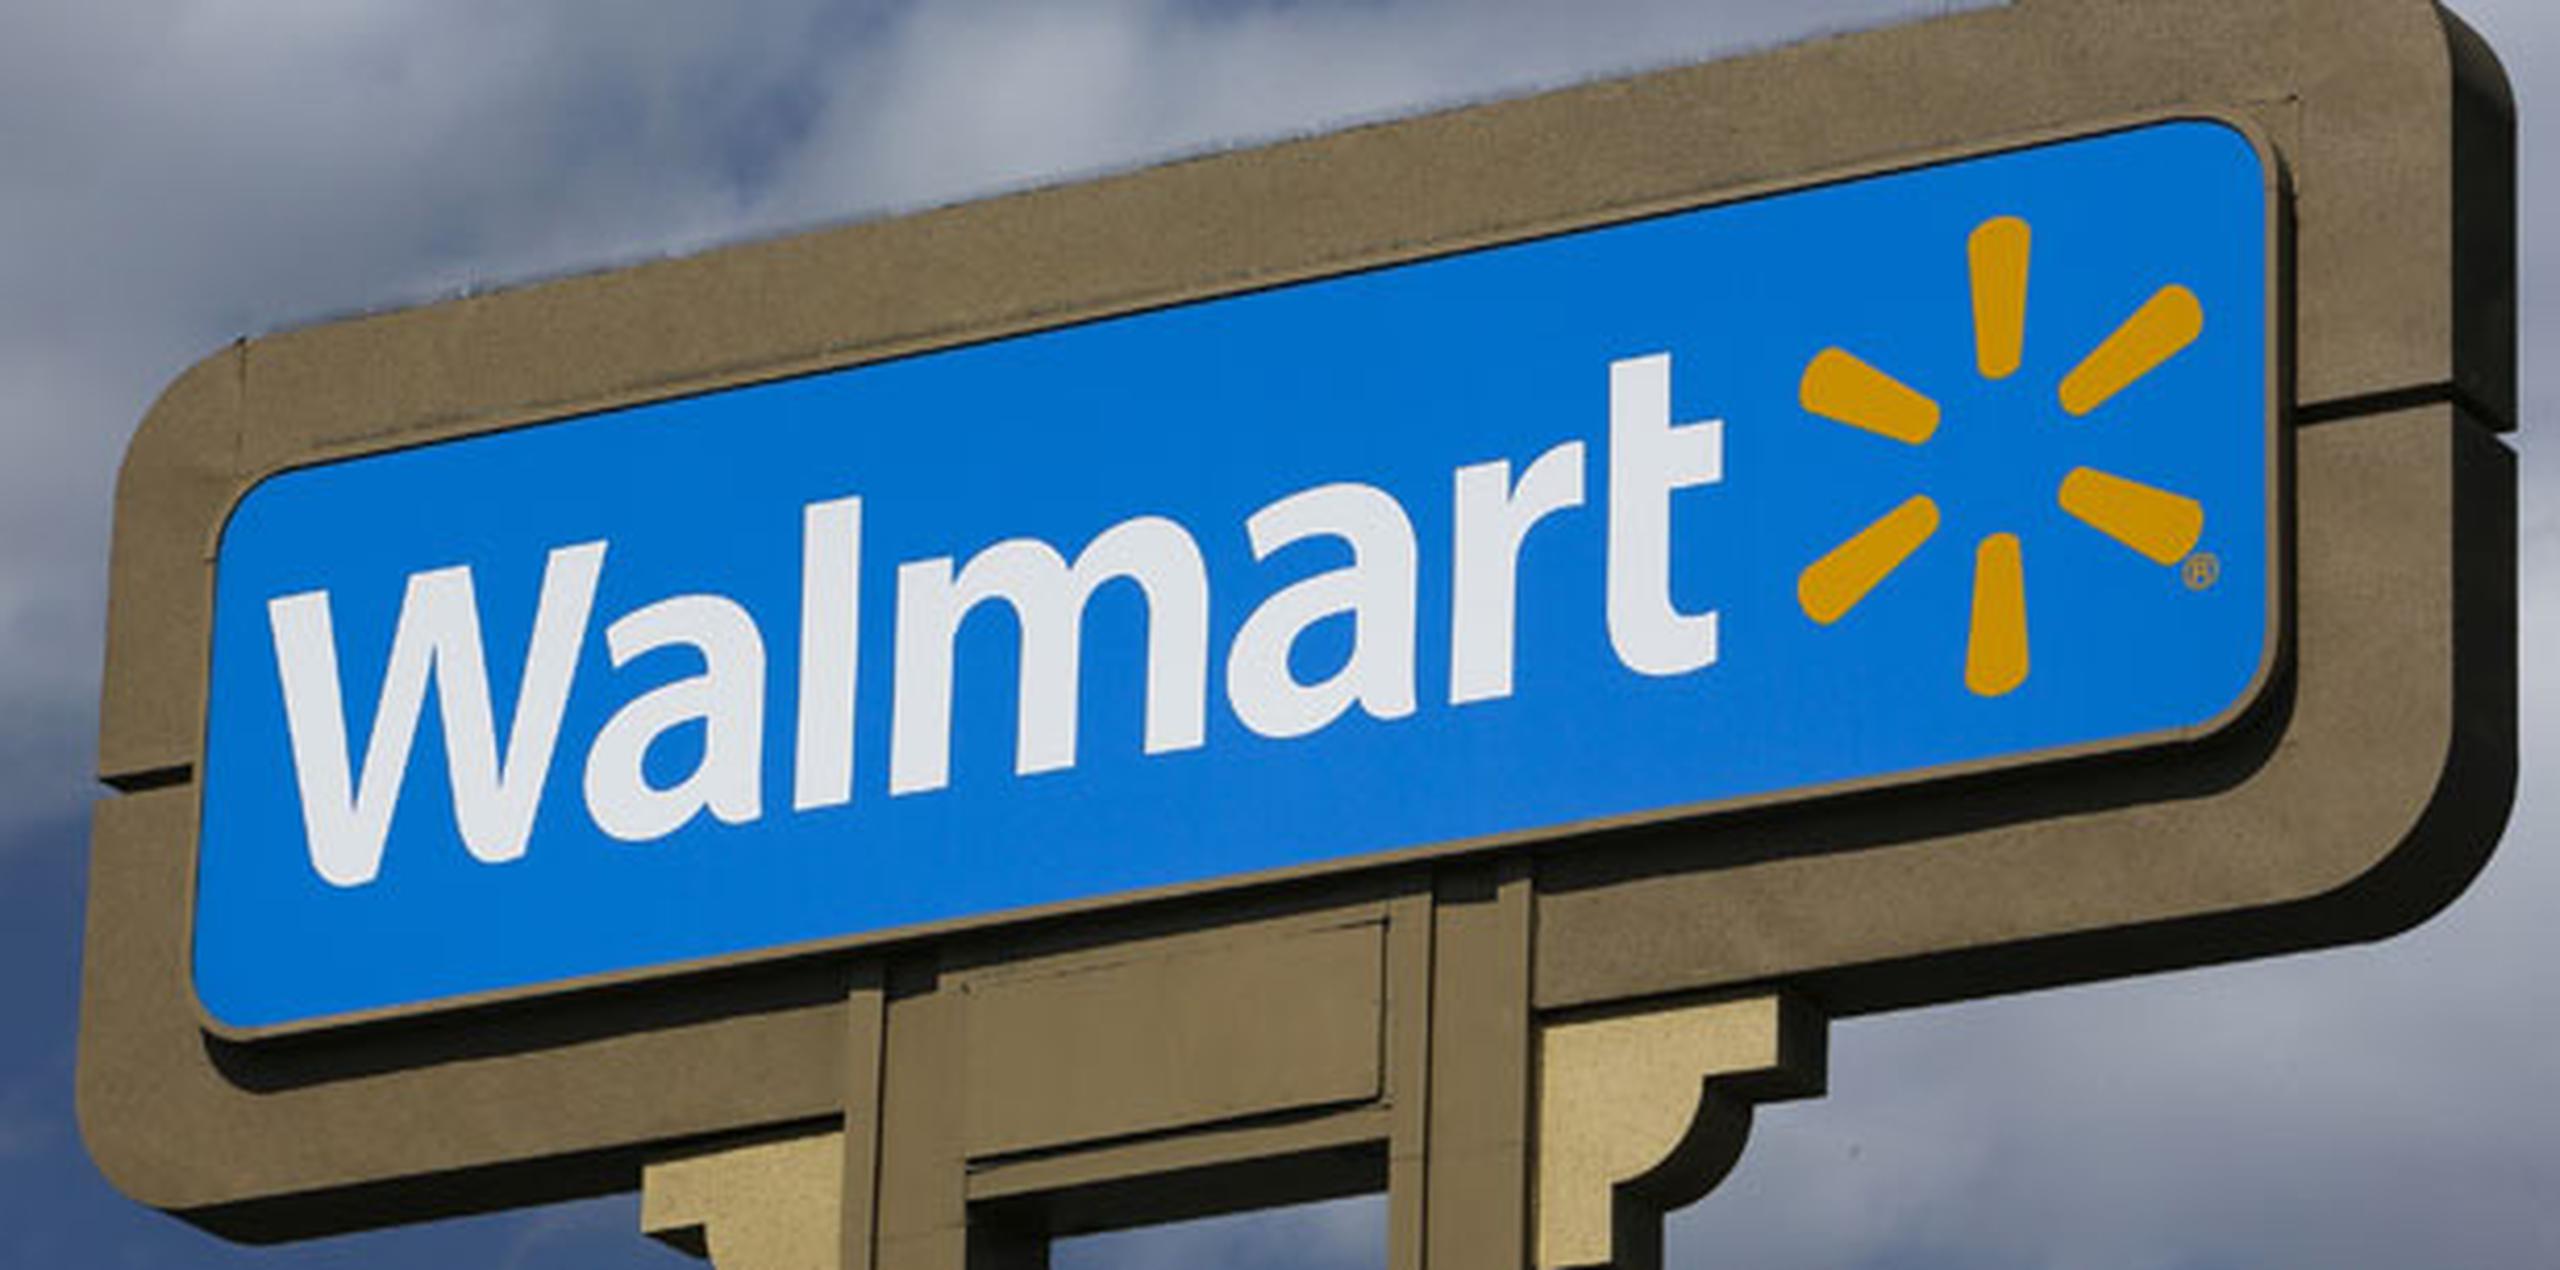 Además de los aumentos, Wal-Mart dice que planea hacer cambios en la forma que se programa el horario de los empleados y establecer planes de capacitación para el personal de ventas, de manera que los trabajadores puedan planear mejor su futuro en la empresa. (Archivo)